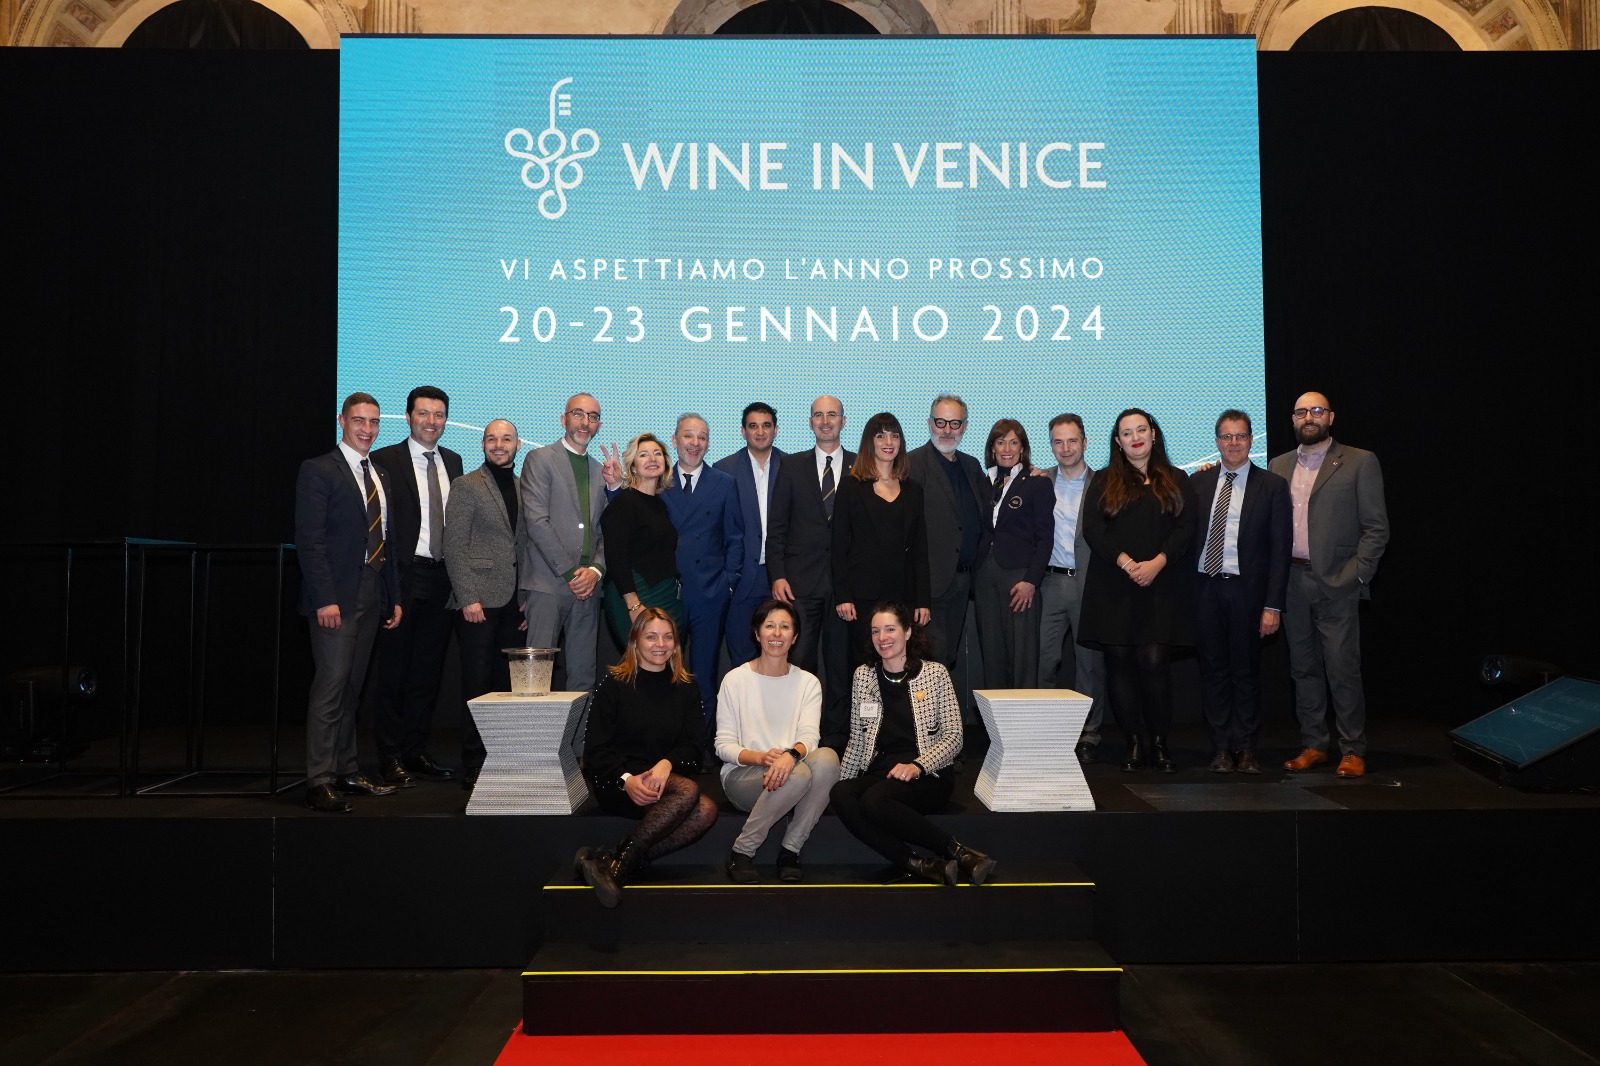 wine in venice 2024 photo credit IG @stefanoceretti